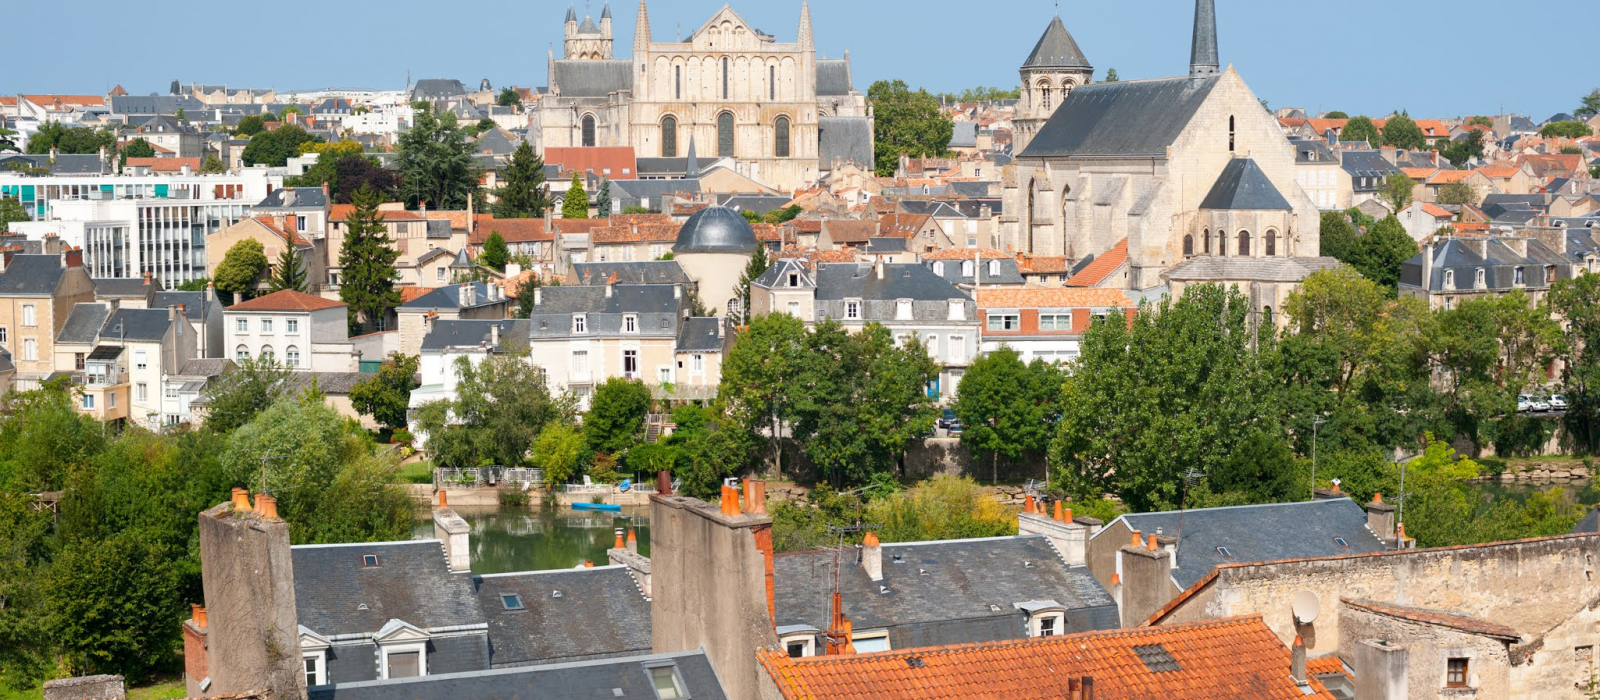 Le top 5 des incontournables de Poitiers